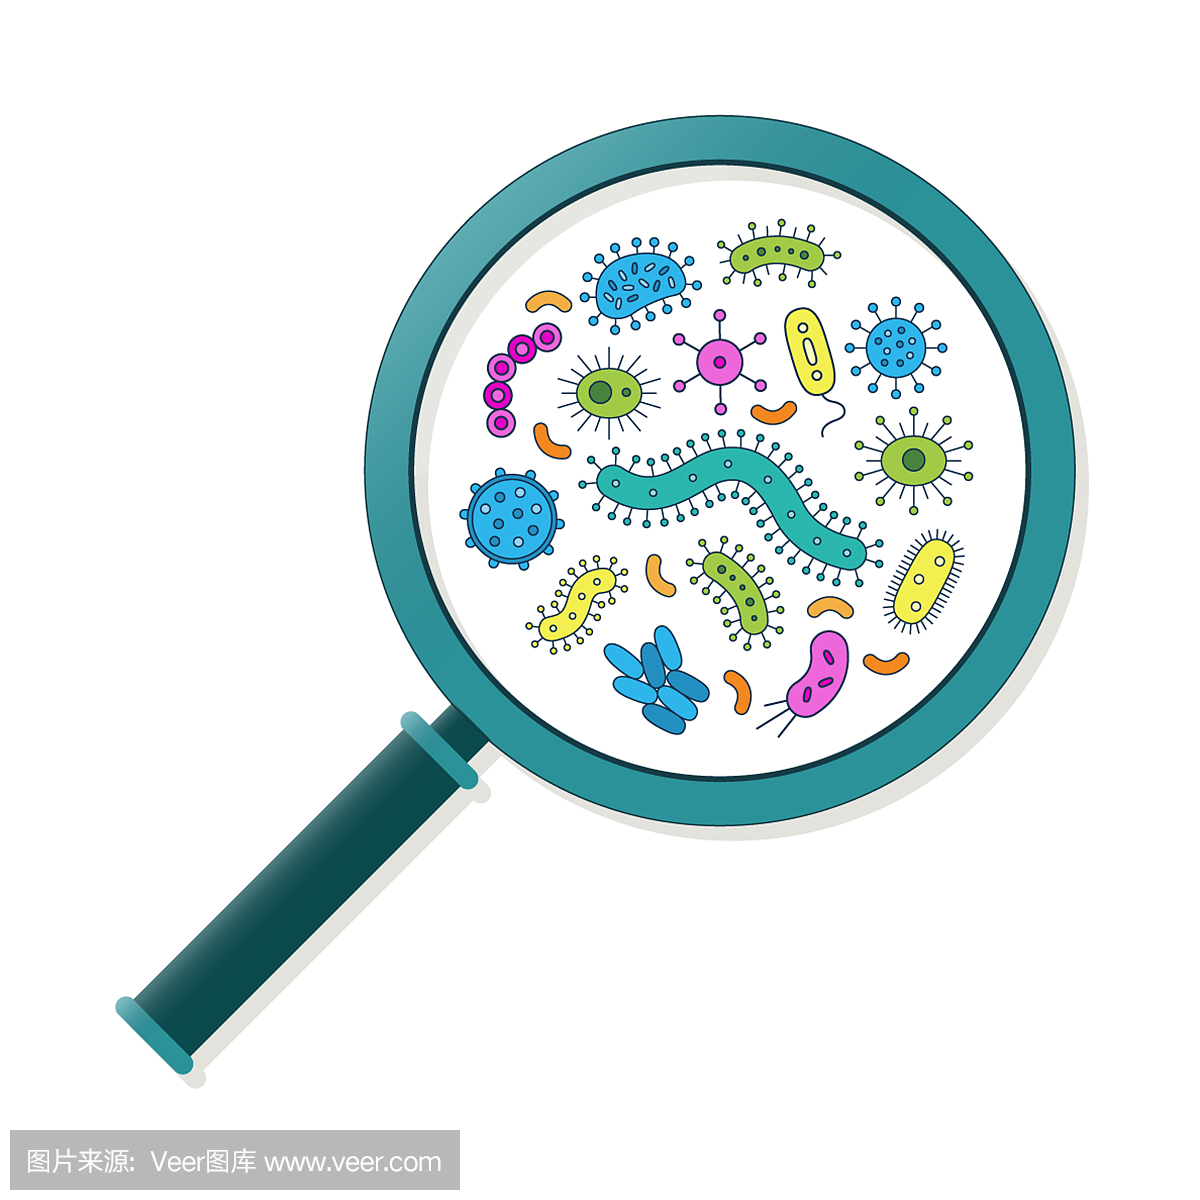 微生物,微生物细胞,菌株,单细胞生物